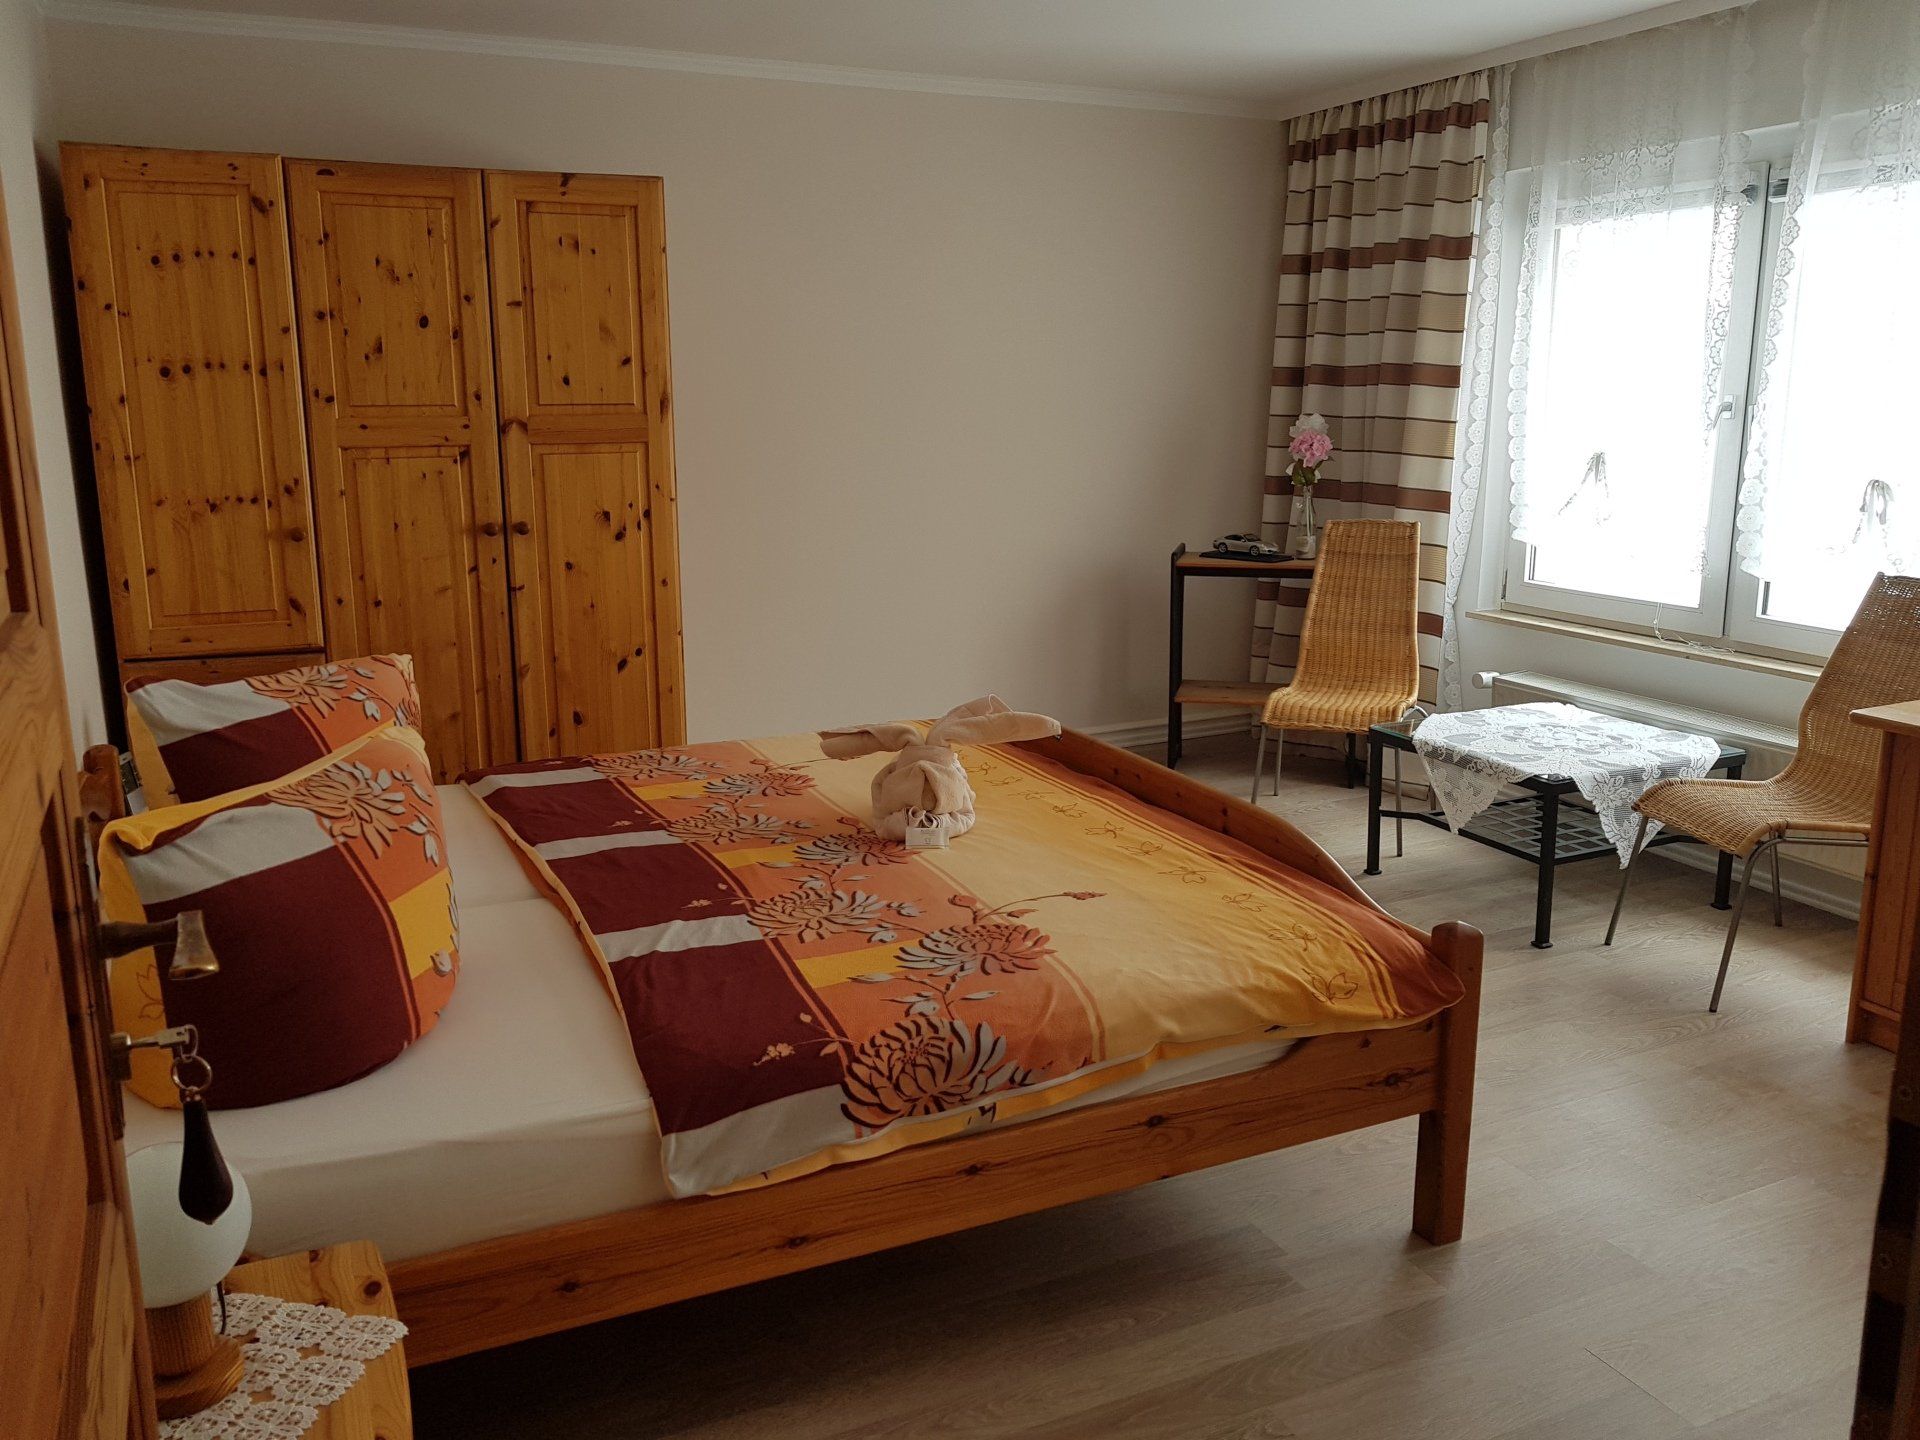 Übernachtung Hotel Pension in der sächsischen Schweiz, gemütliche Zimmer in derLandpension Bielatal Raum nahe Königstein